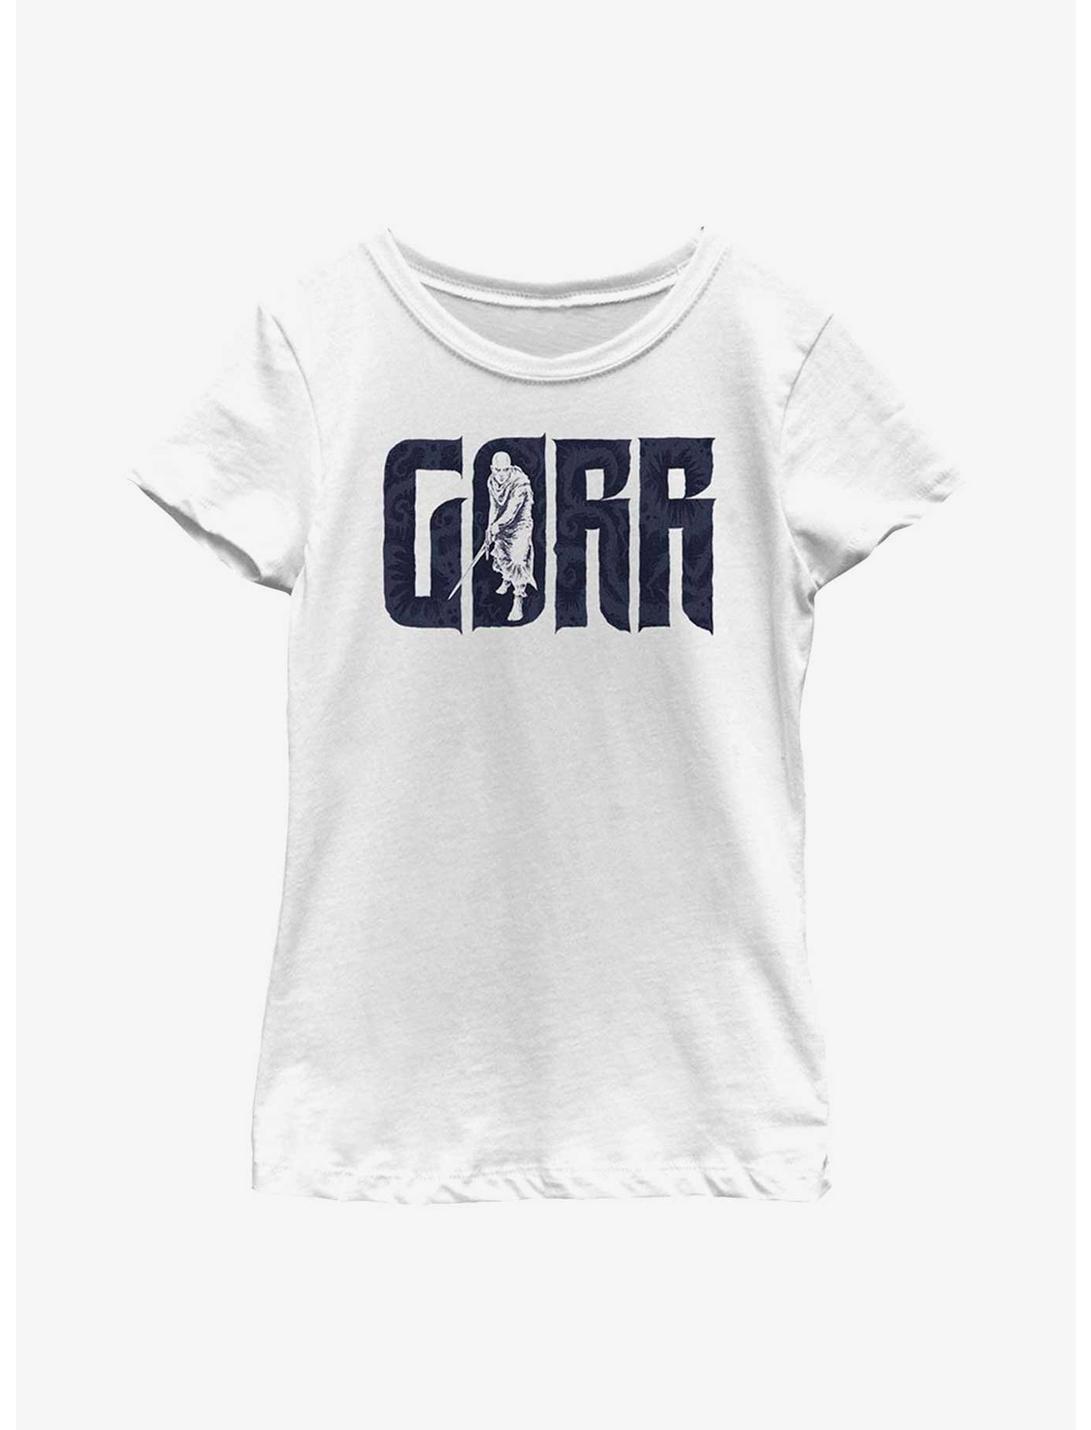 Marvel Thor: Love And Thunder Gorr Youth Girls T-Shirt, WHITE, hi-res